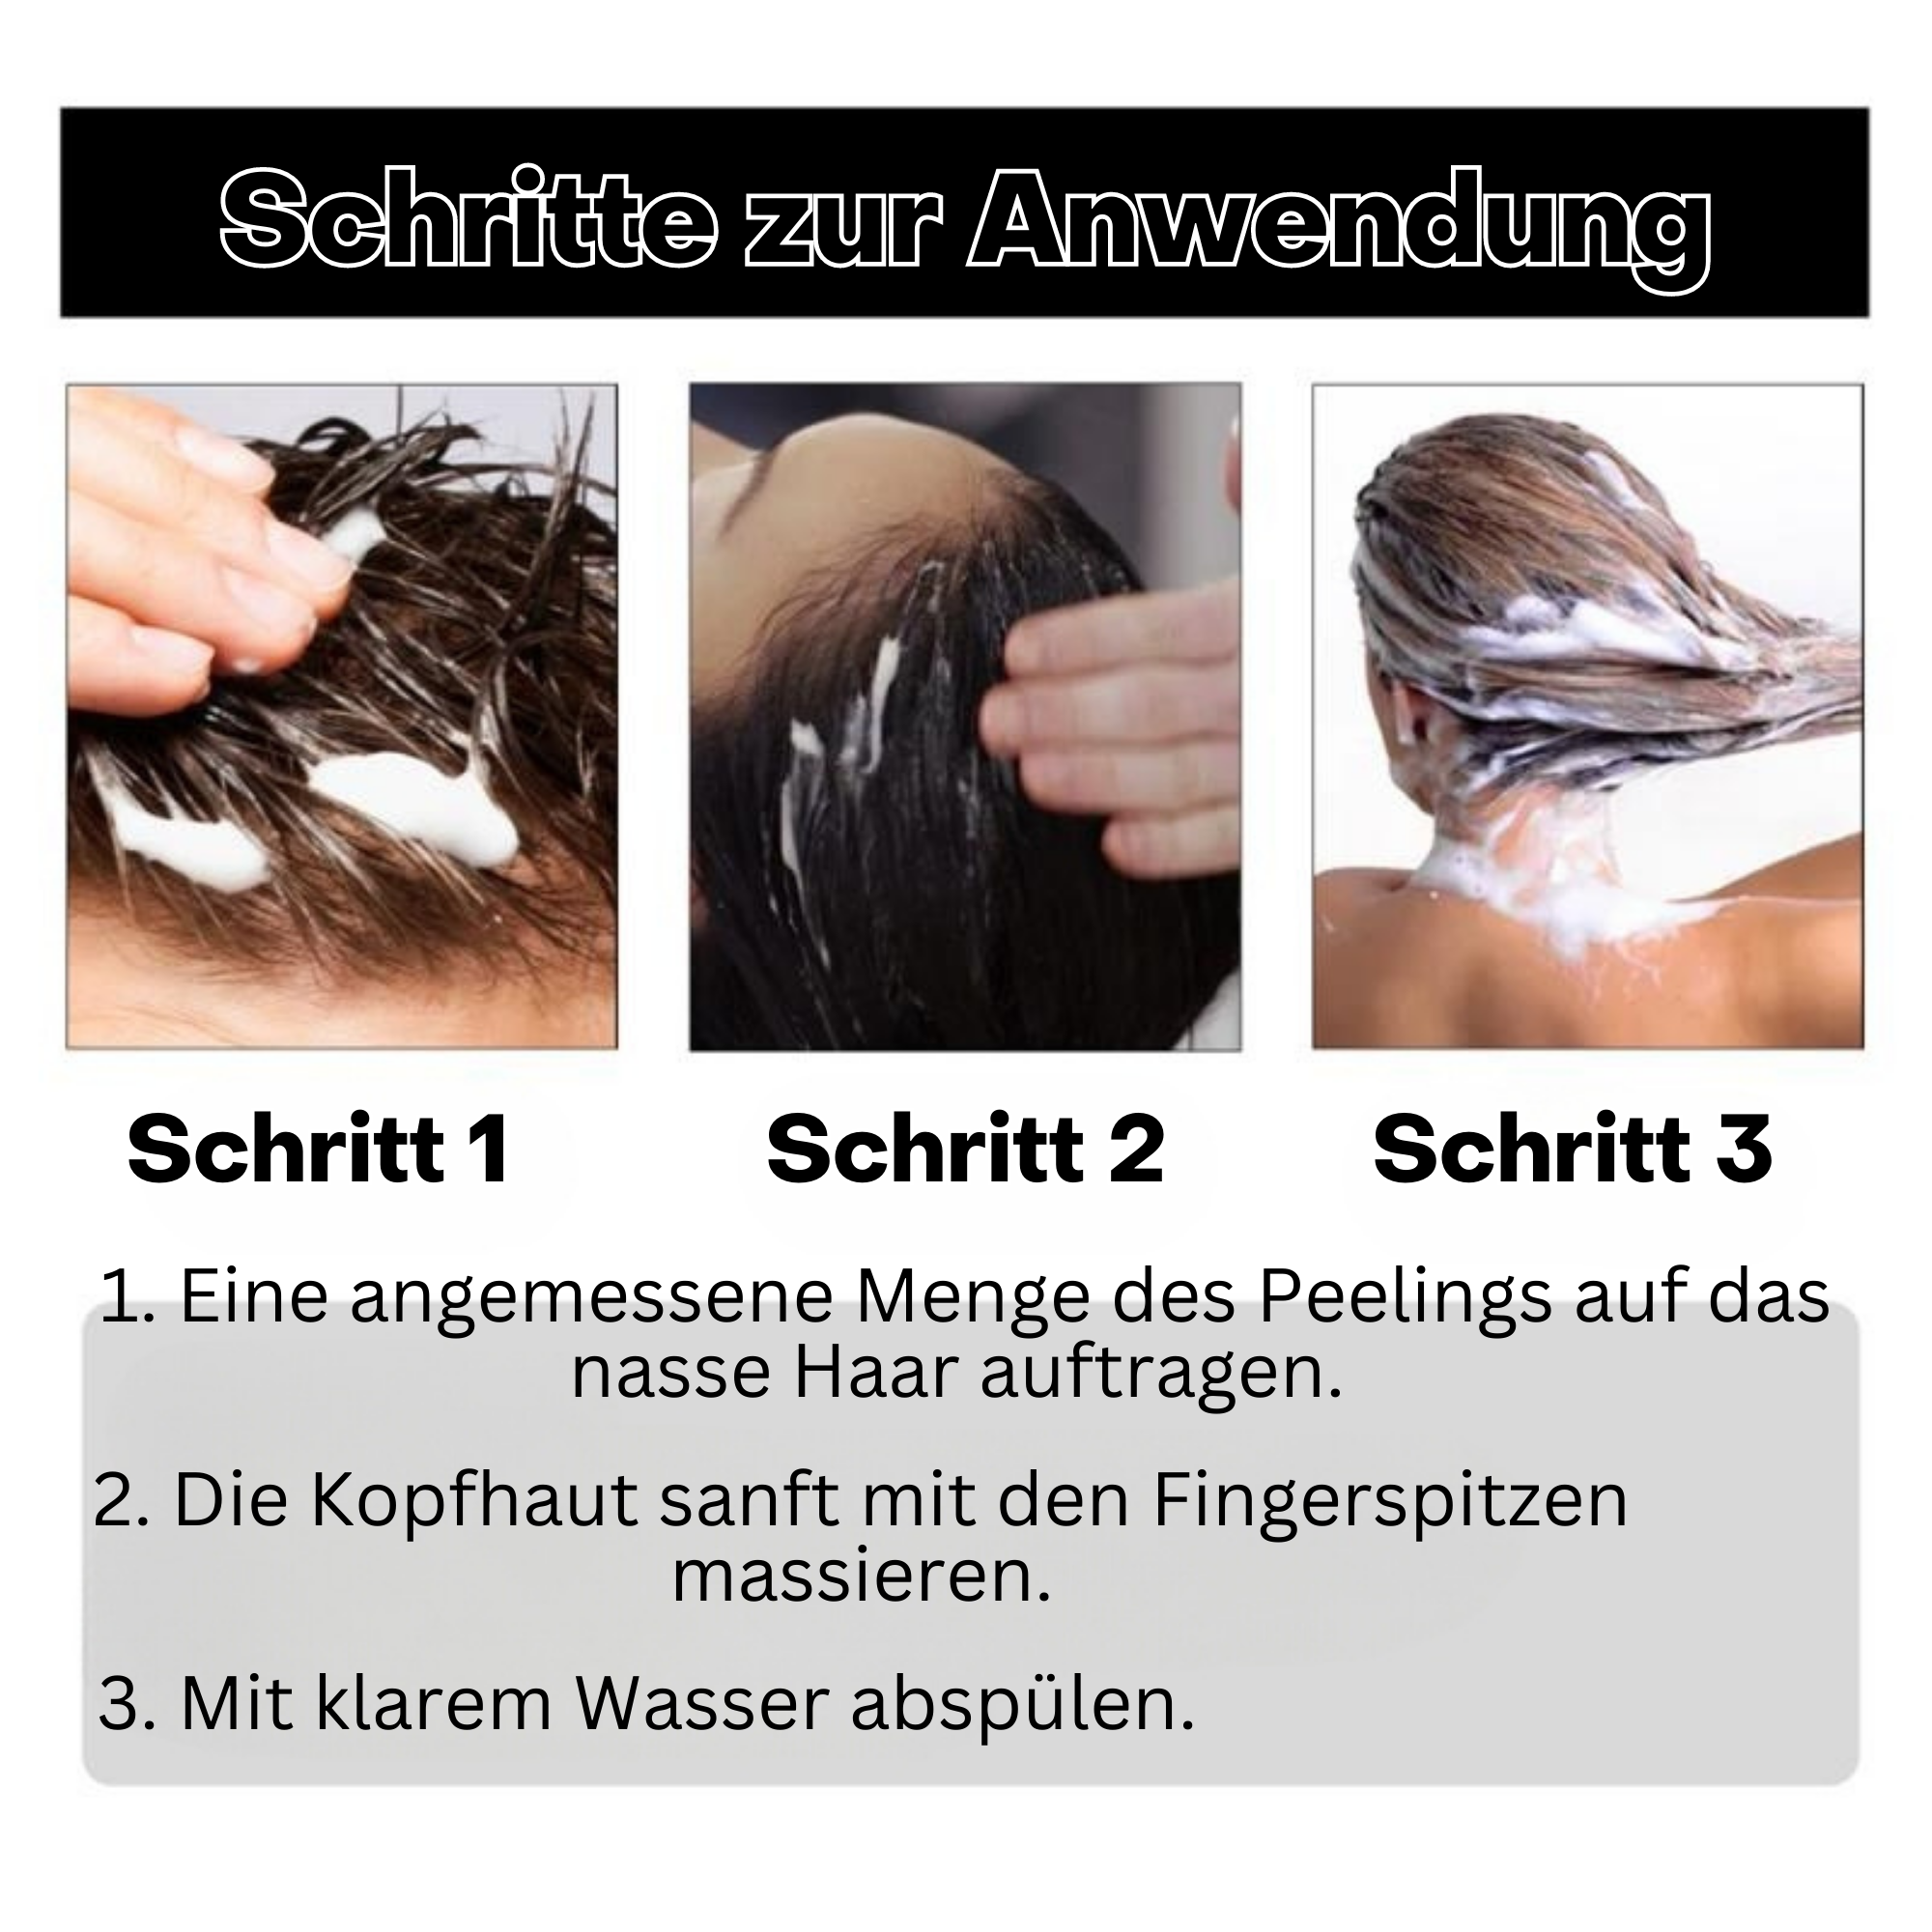 RevitaHair™️ I Haarwachstums-Peeling (1+1 GRATIS)